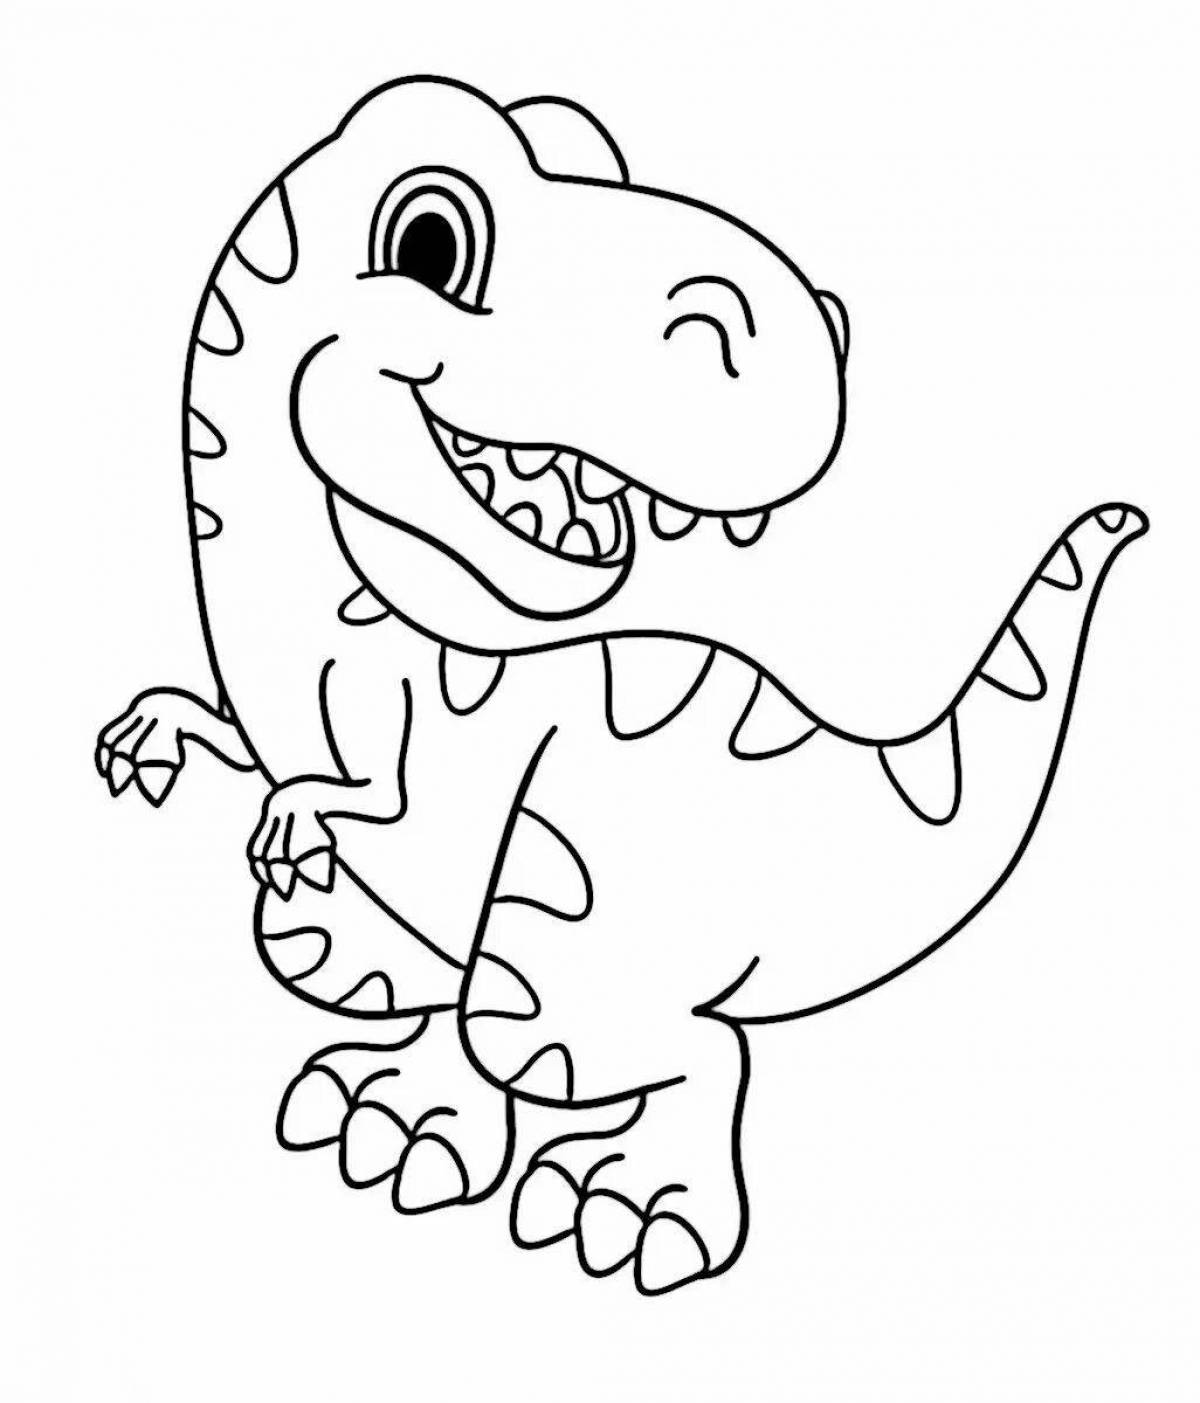 Веселая раскраска динозавров рекс для детей